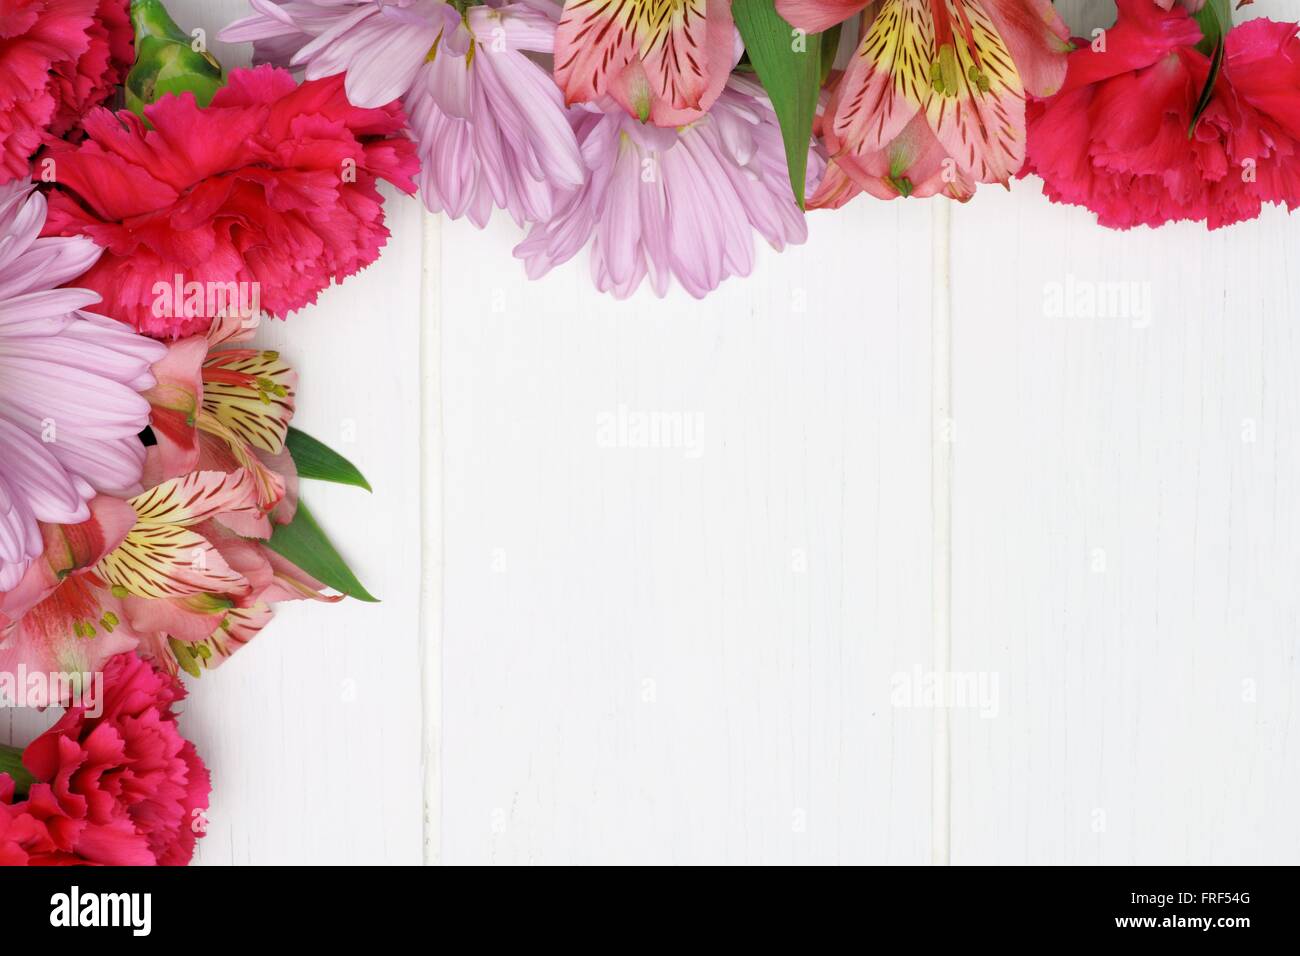 Ecke Grenze rosa Nelke, Daisy und Lily Blüten vor einem weißen Hintergrund Holz Stockfoto